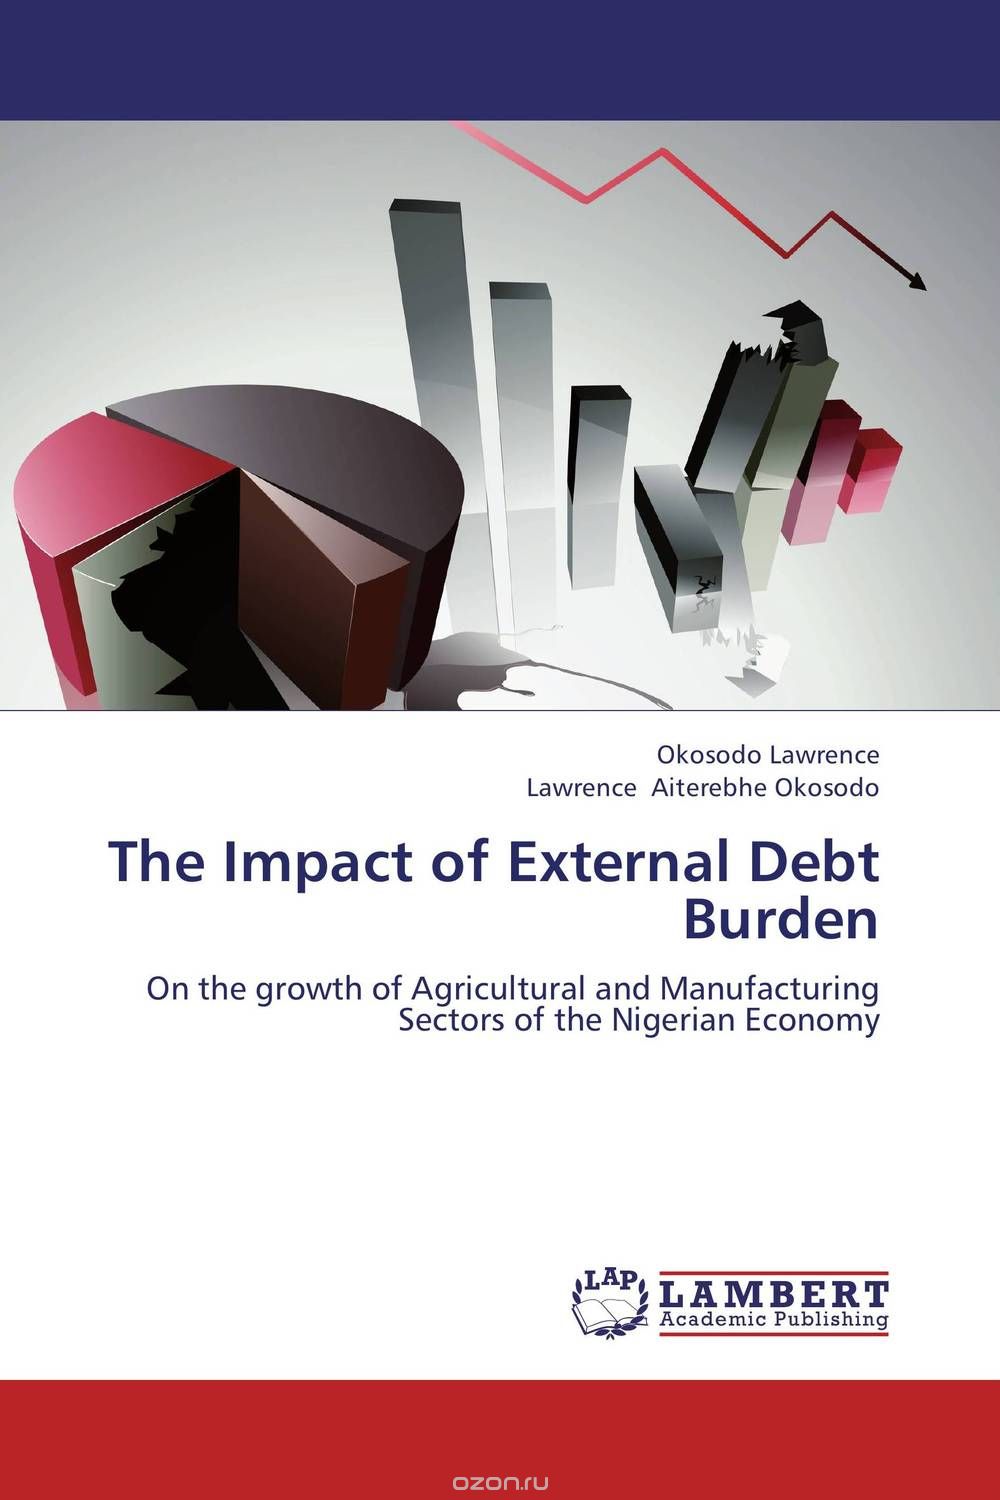 Скачать книгу "The Impact of External Debt Burden"